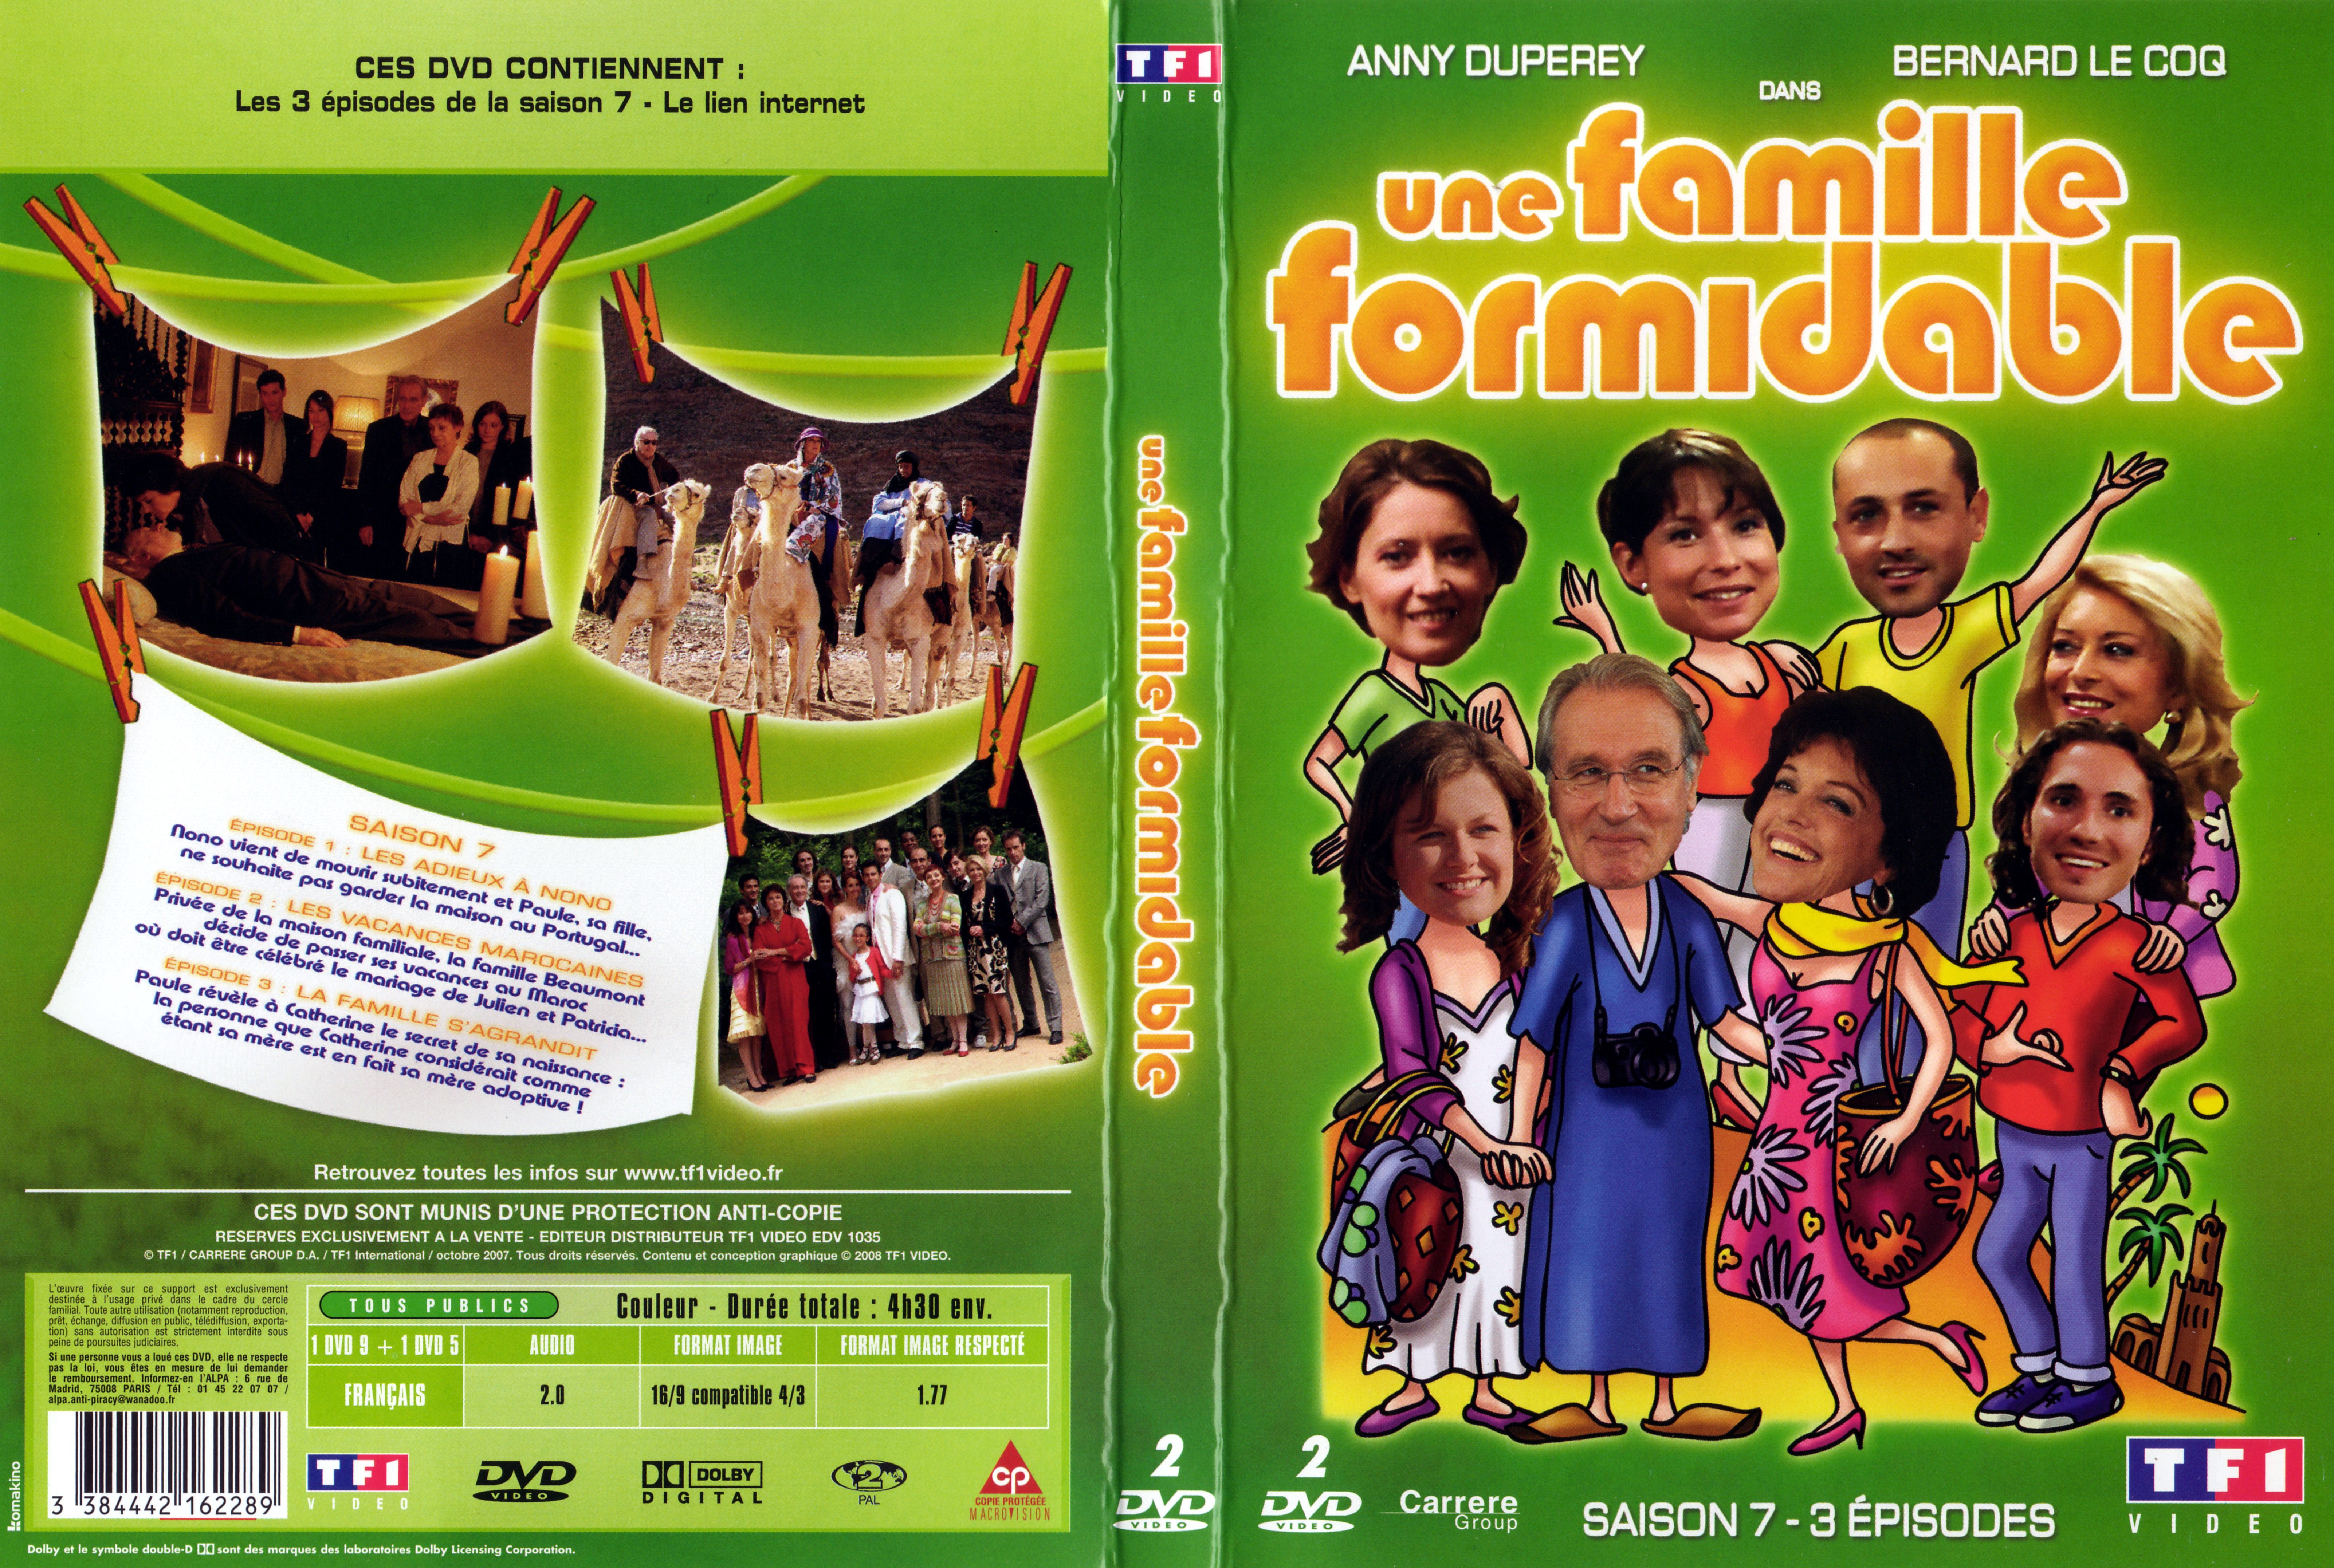 Jaquette DVD Une famille formidable pisode 19  21 Saison 7